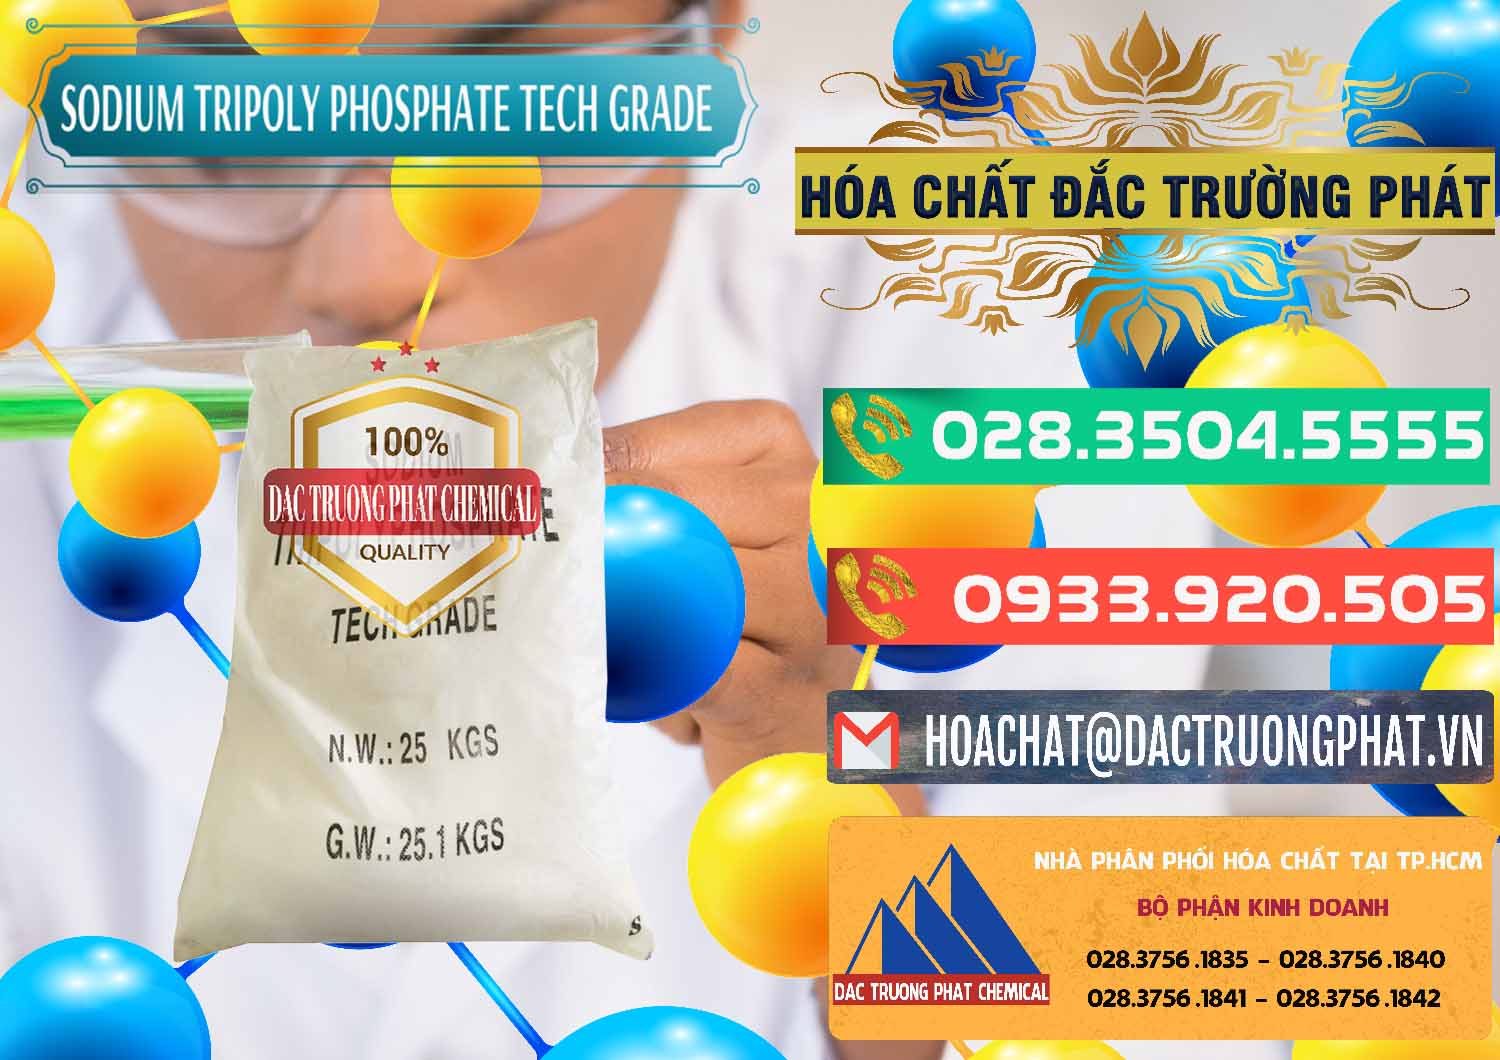 Cty bán ( cung cấp ) Sodium Tripoly Phosphate - STPP Tech Grade Trung Quốc China - 0453 - Công ty chuyên phân phối và cung ứng hóa chất tại TP.HCM - congtyhoachat.com.vn